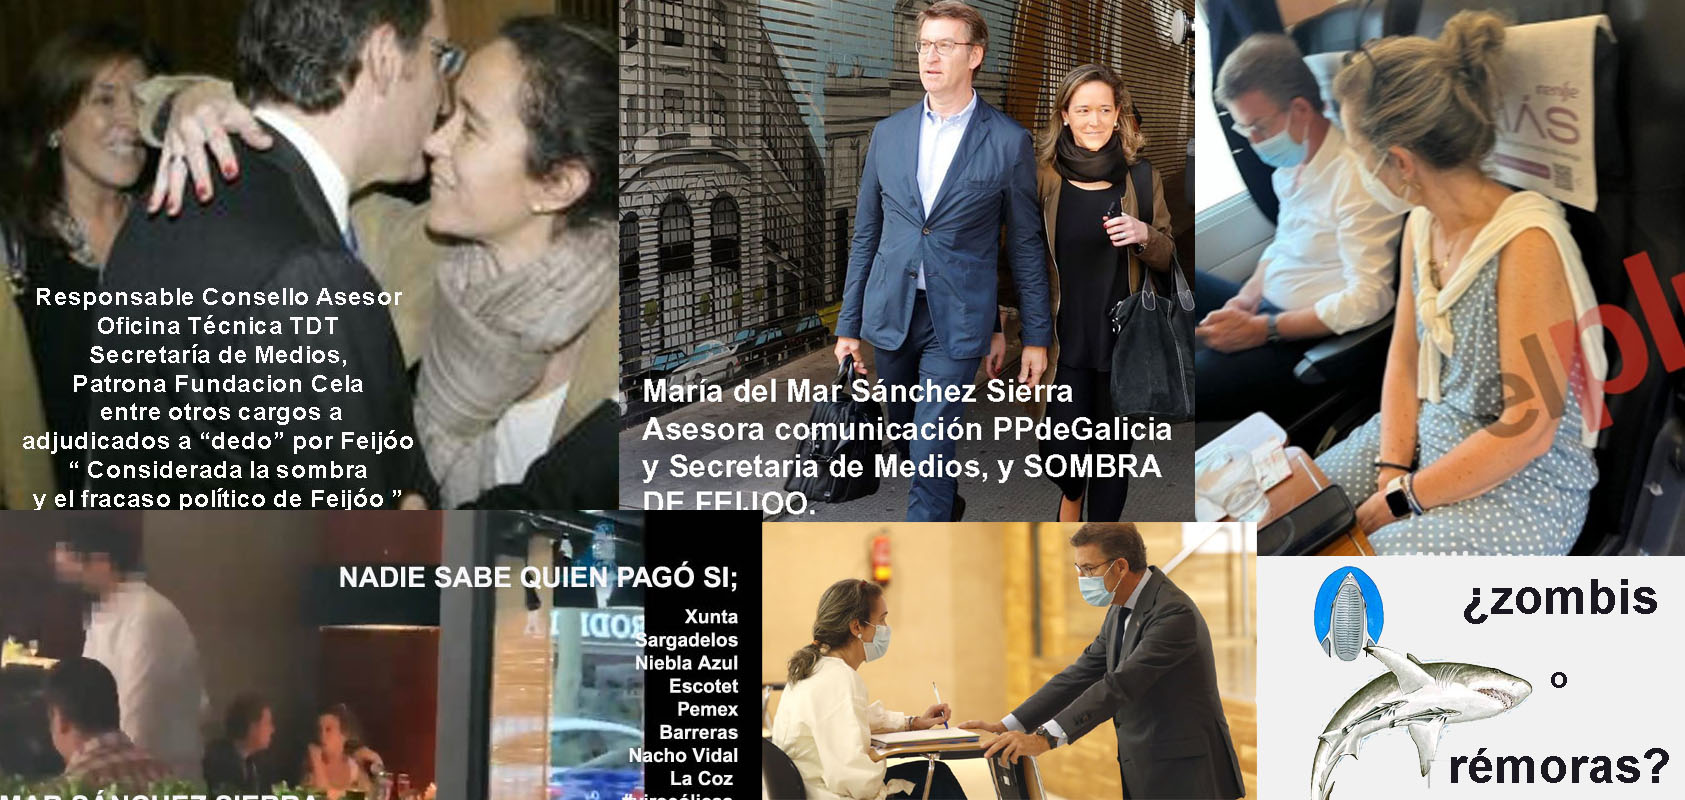 María del Mar Sánchez sierra "pierde fuelle" en la manipulación de los  medios de comunicación al perder el dispendio de dinero público de su cargo  en Xunta bajo la prevaricación durante 10